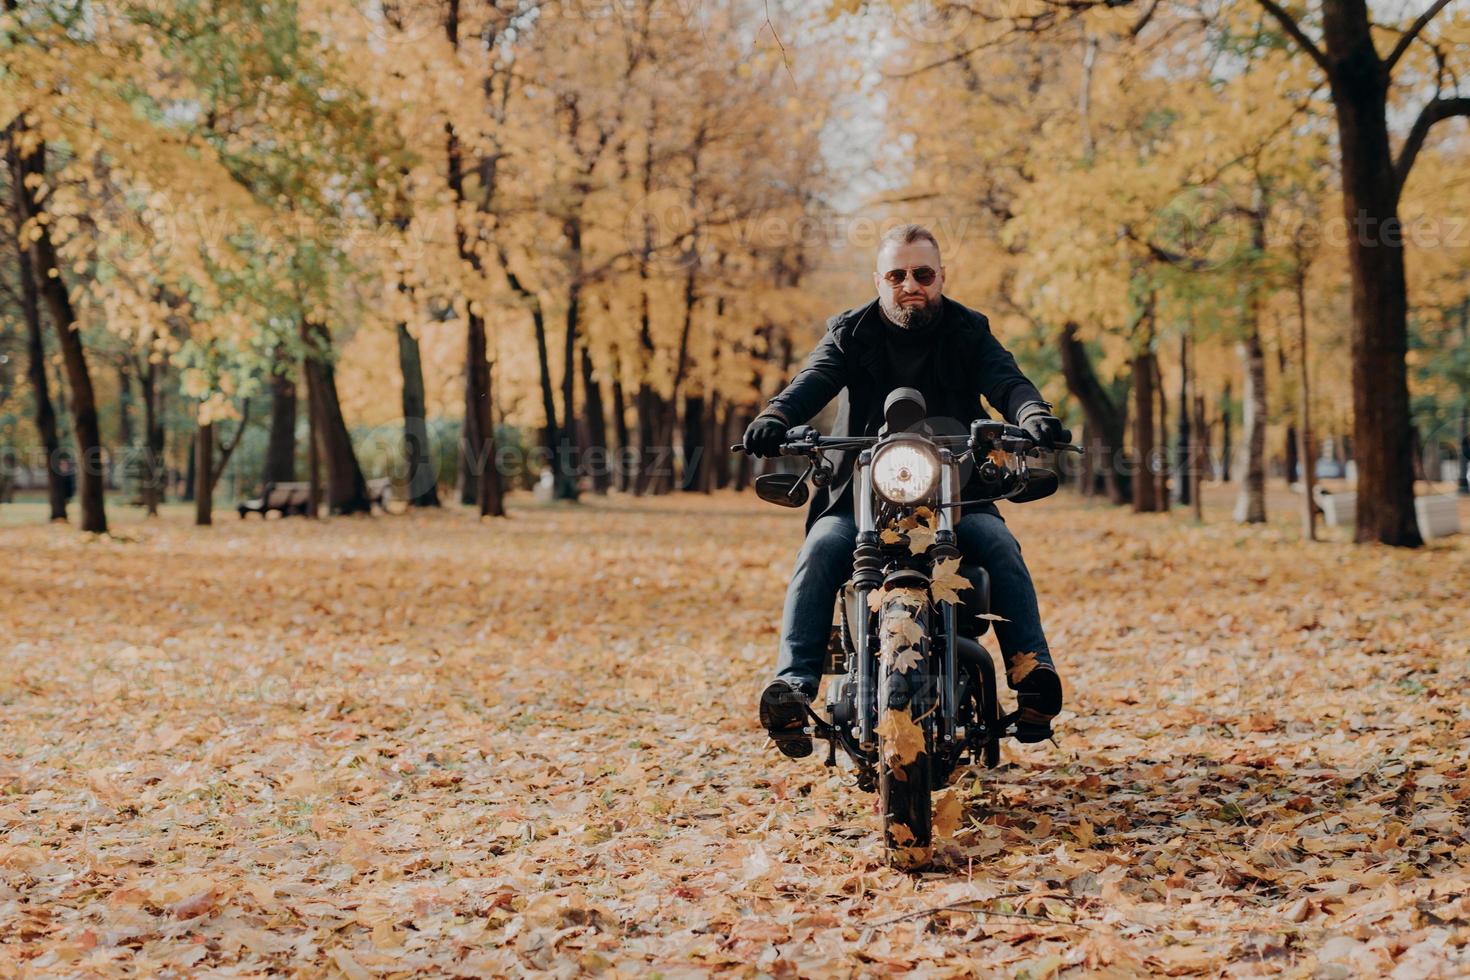 brutal professionell manlig motorcyklist cyklar, bär solglasögon, handskar och svart jacka, har åkt genom höstparken, vacker natur i bakgrunden med gula träd och fallna löv runt om foto